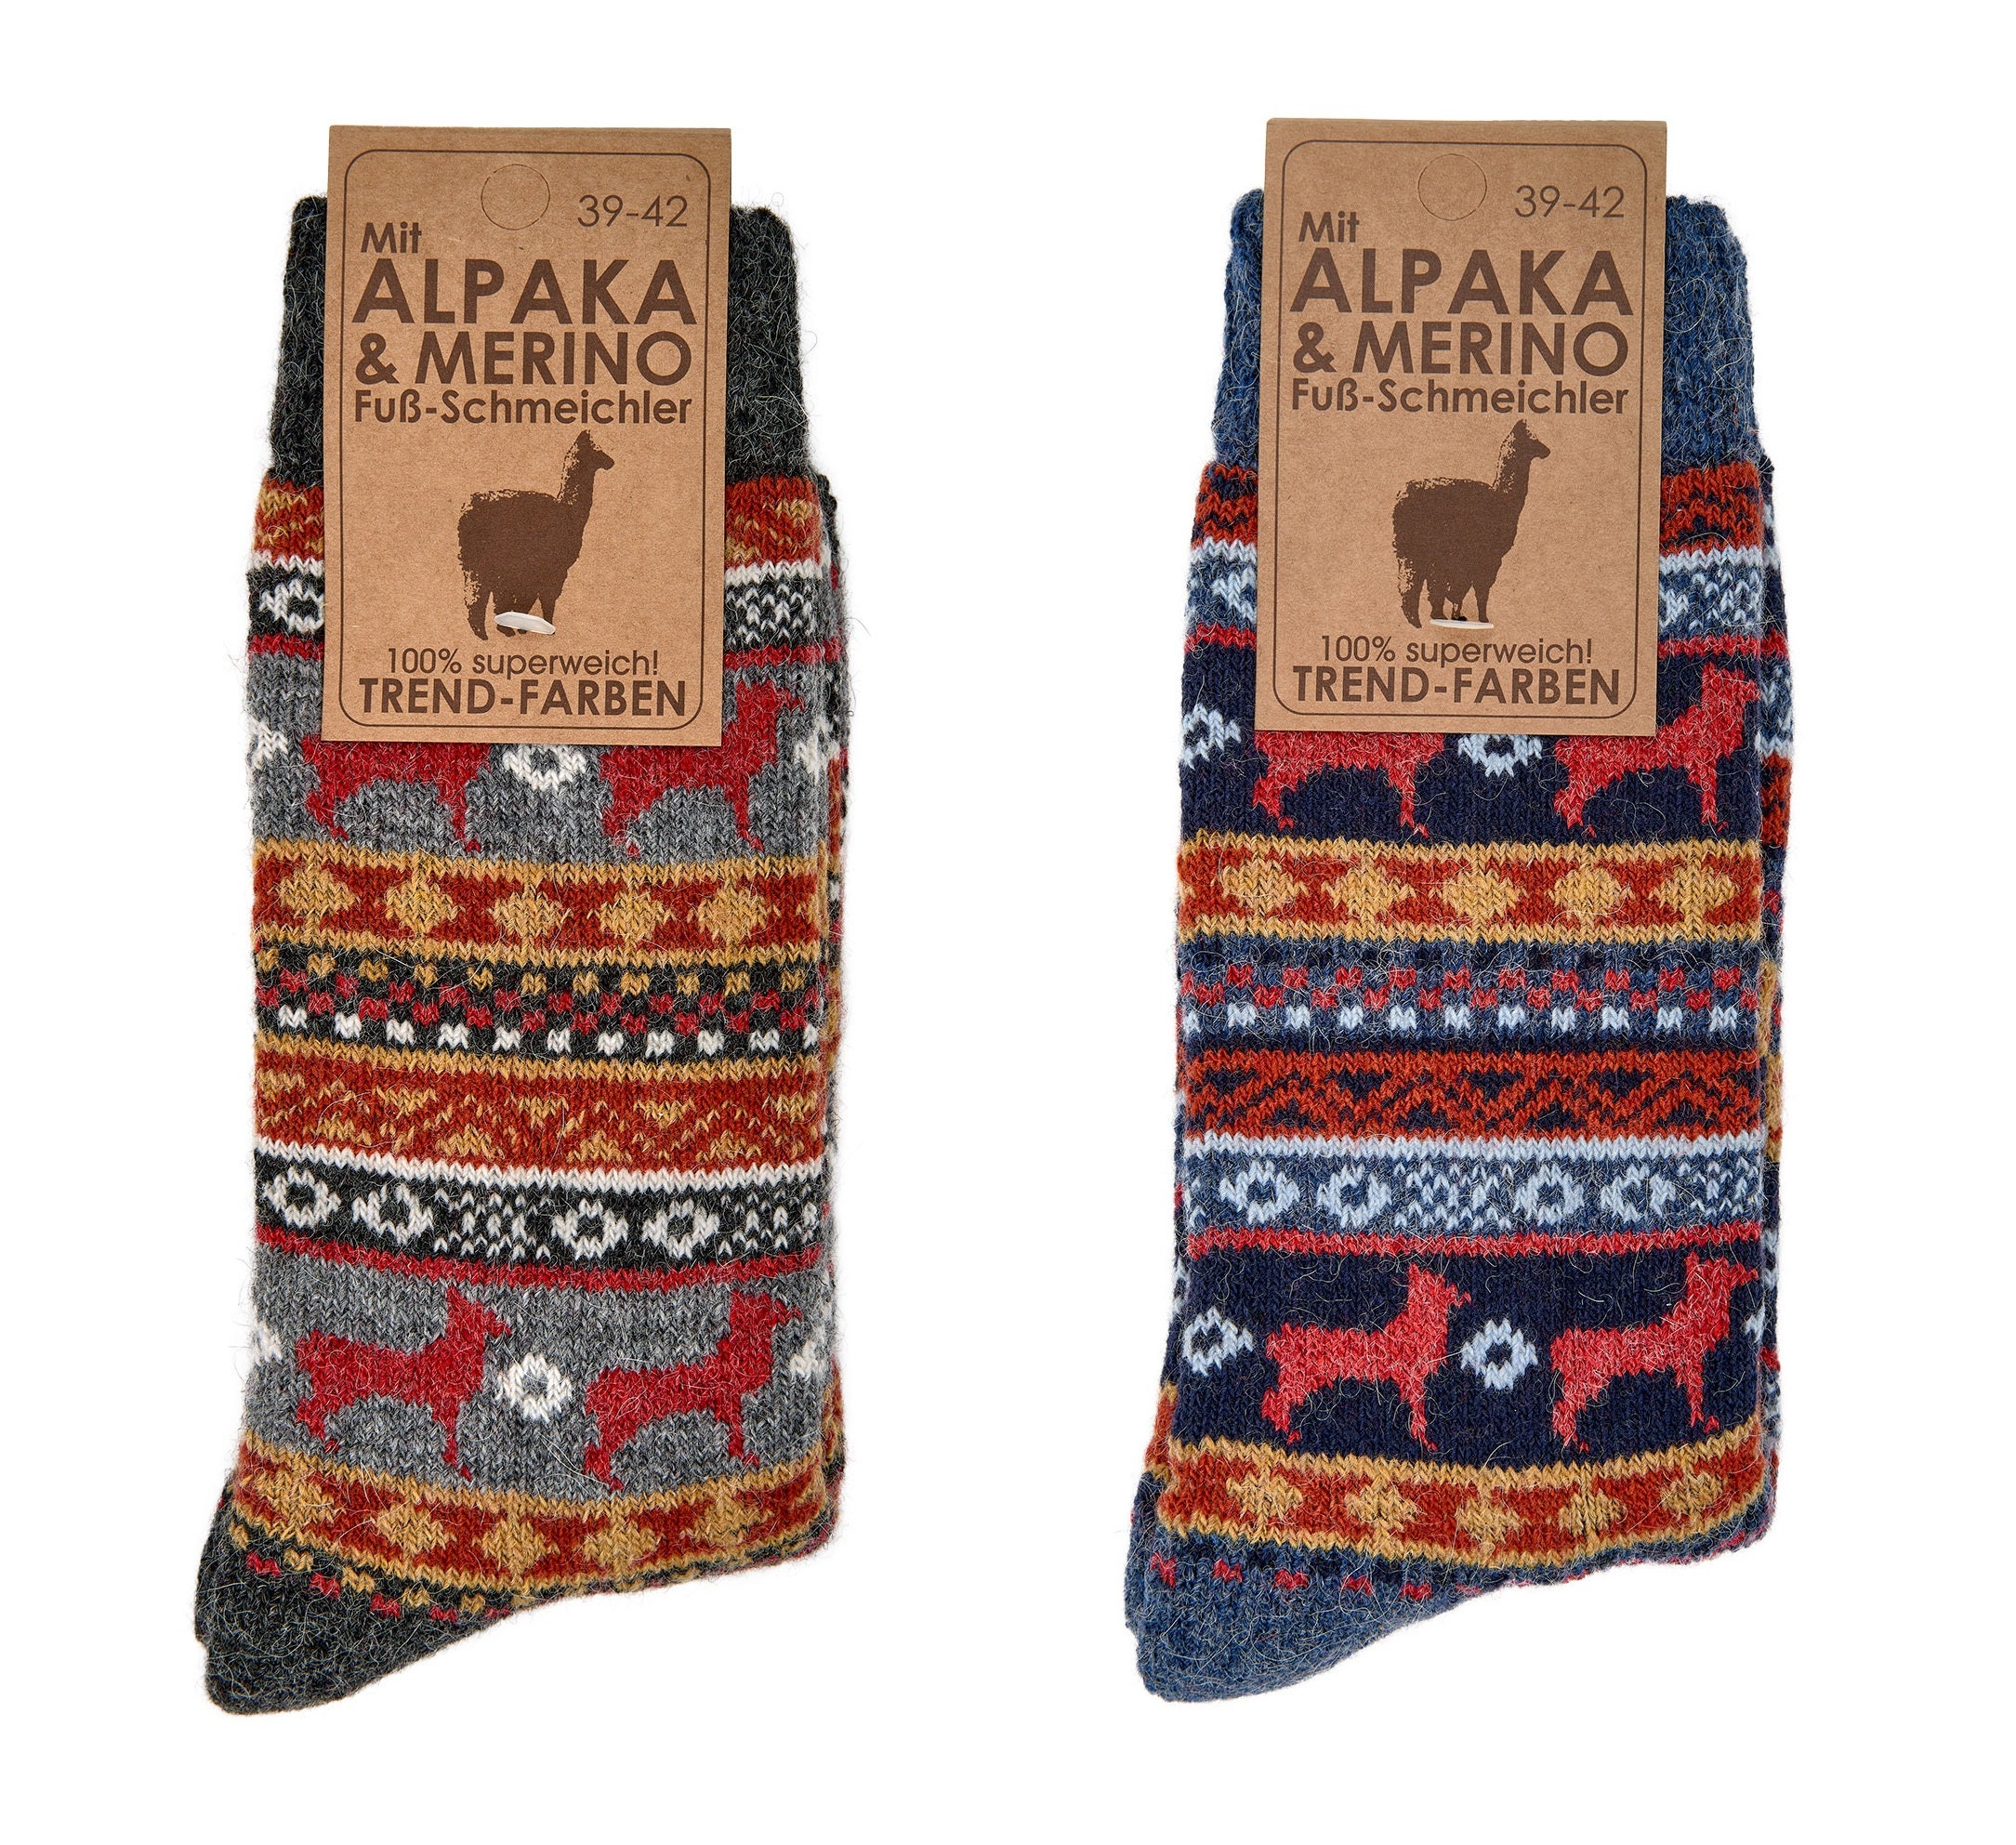 2 Pairs of Merino & Alpaca Wool Peruvian Pattern, Norwegian Wool Socks ...